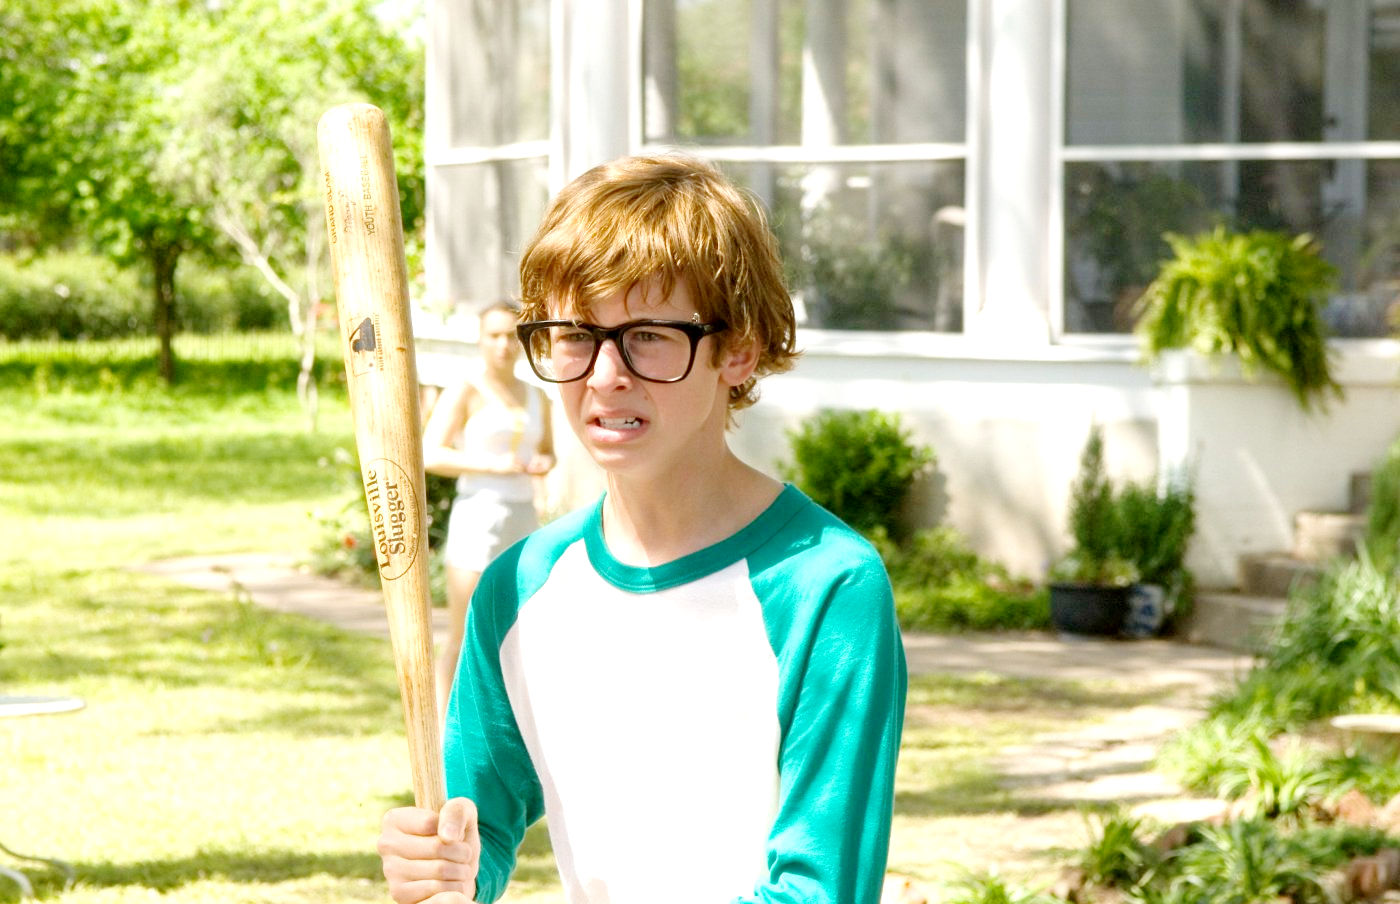 Cayden Boyd stars as Young Michael Waechter in Senator International's Fireflies in the Garden (2011)